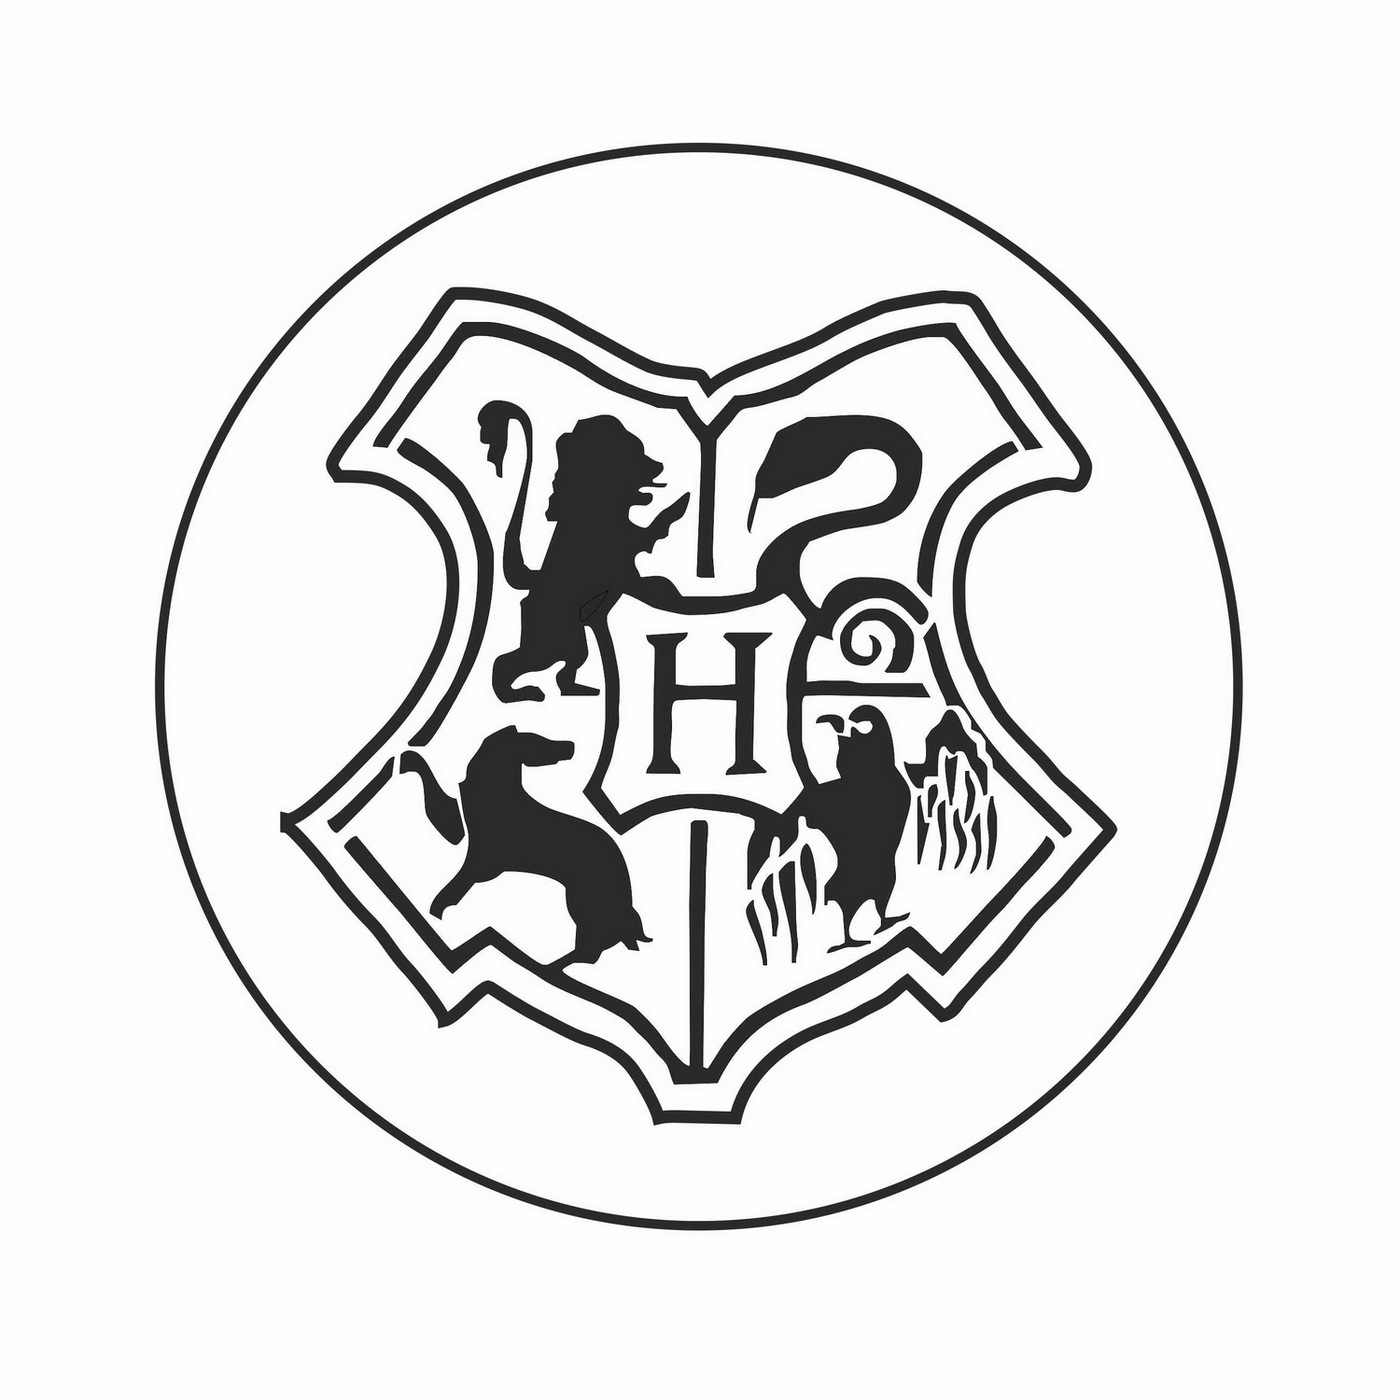 Сургучная печать Хогвартс / Hogwarts